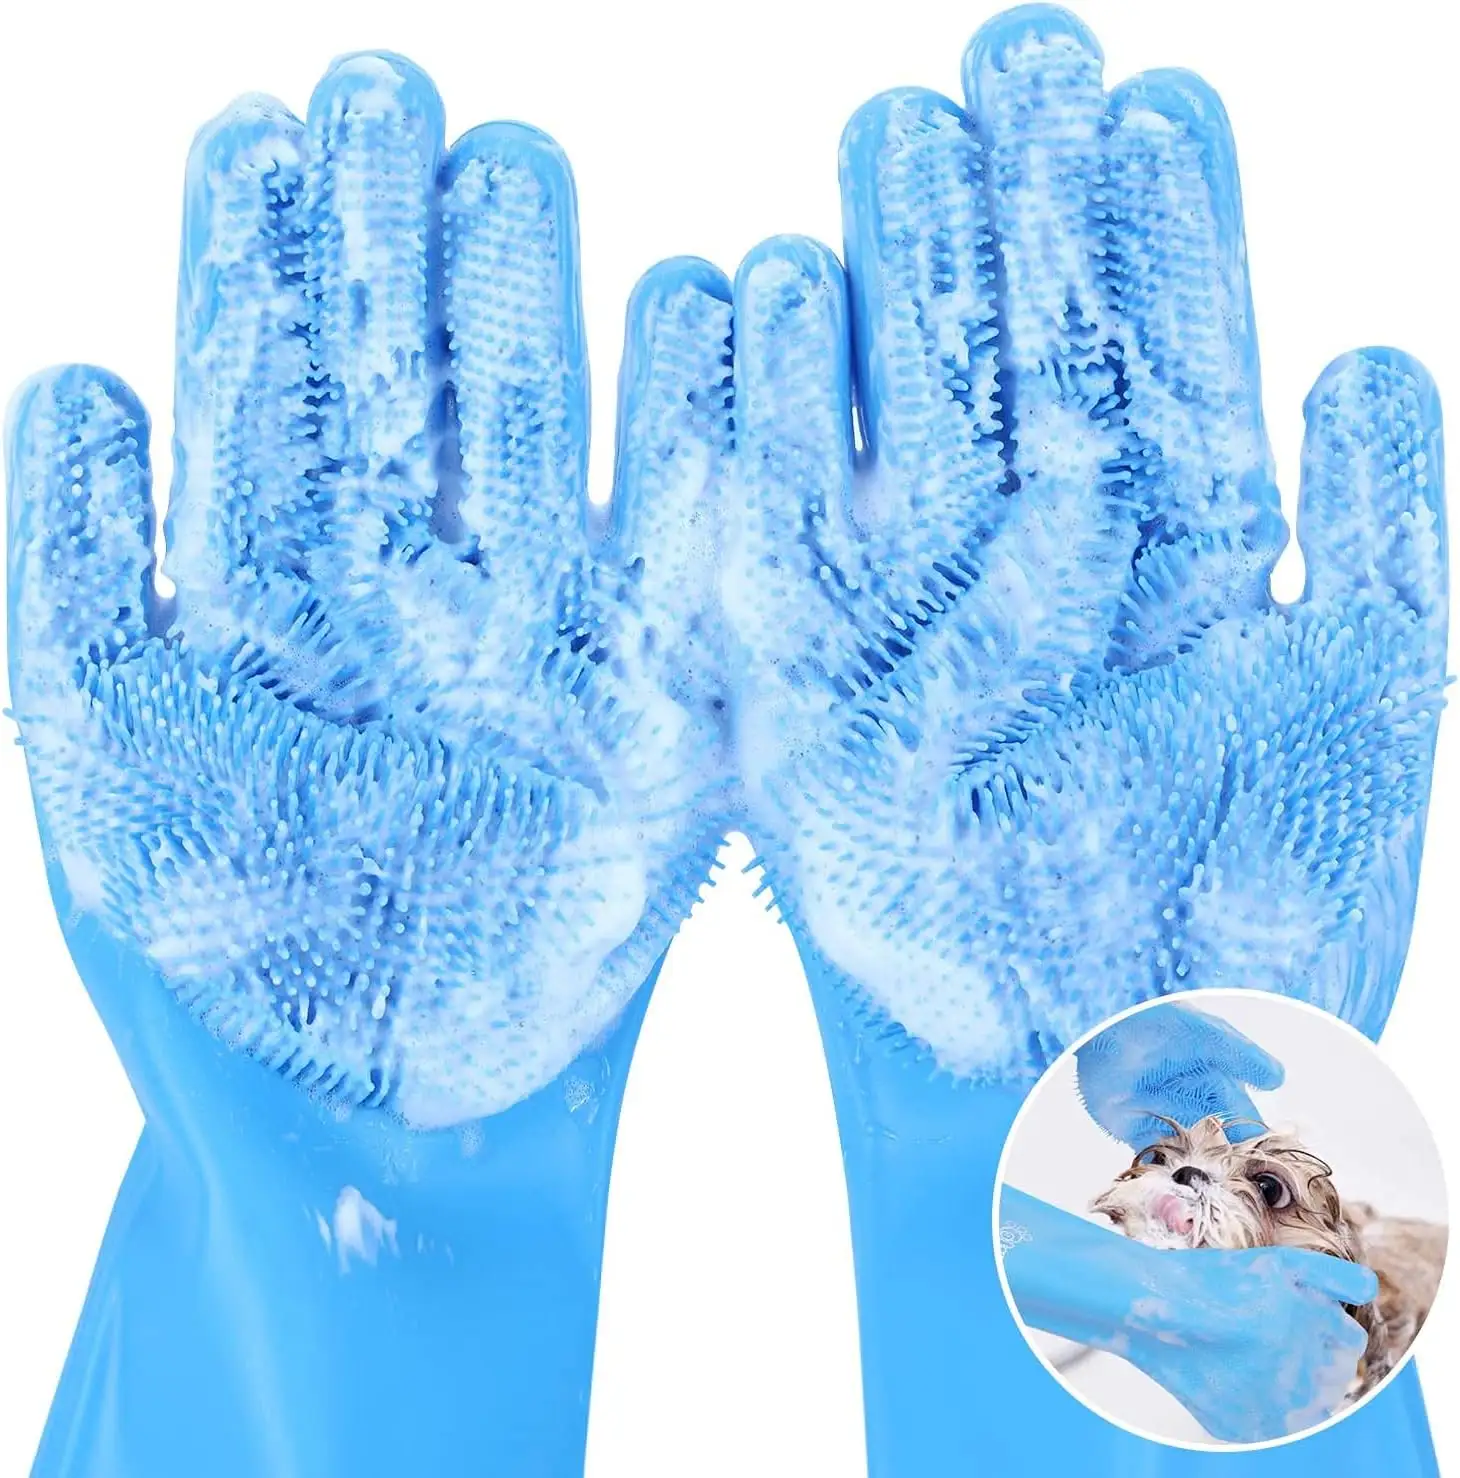 Pet chải chuốt Găng Tay Chịu Nhiệt Silicone Dog Cat tắm Găng tay với tăng cường năm ngón tay thiết kế cho tắm và xoa bóp